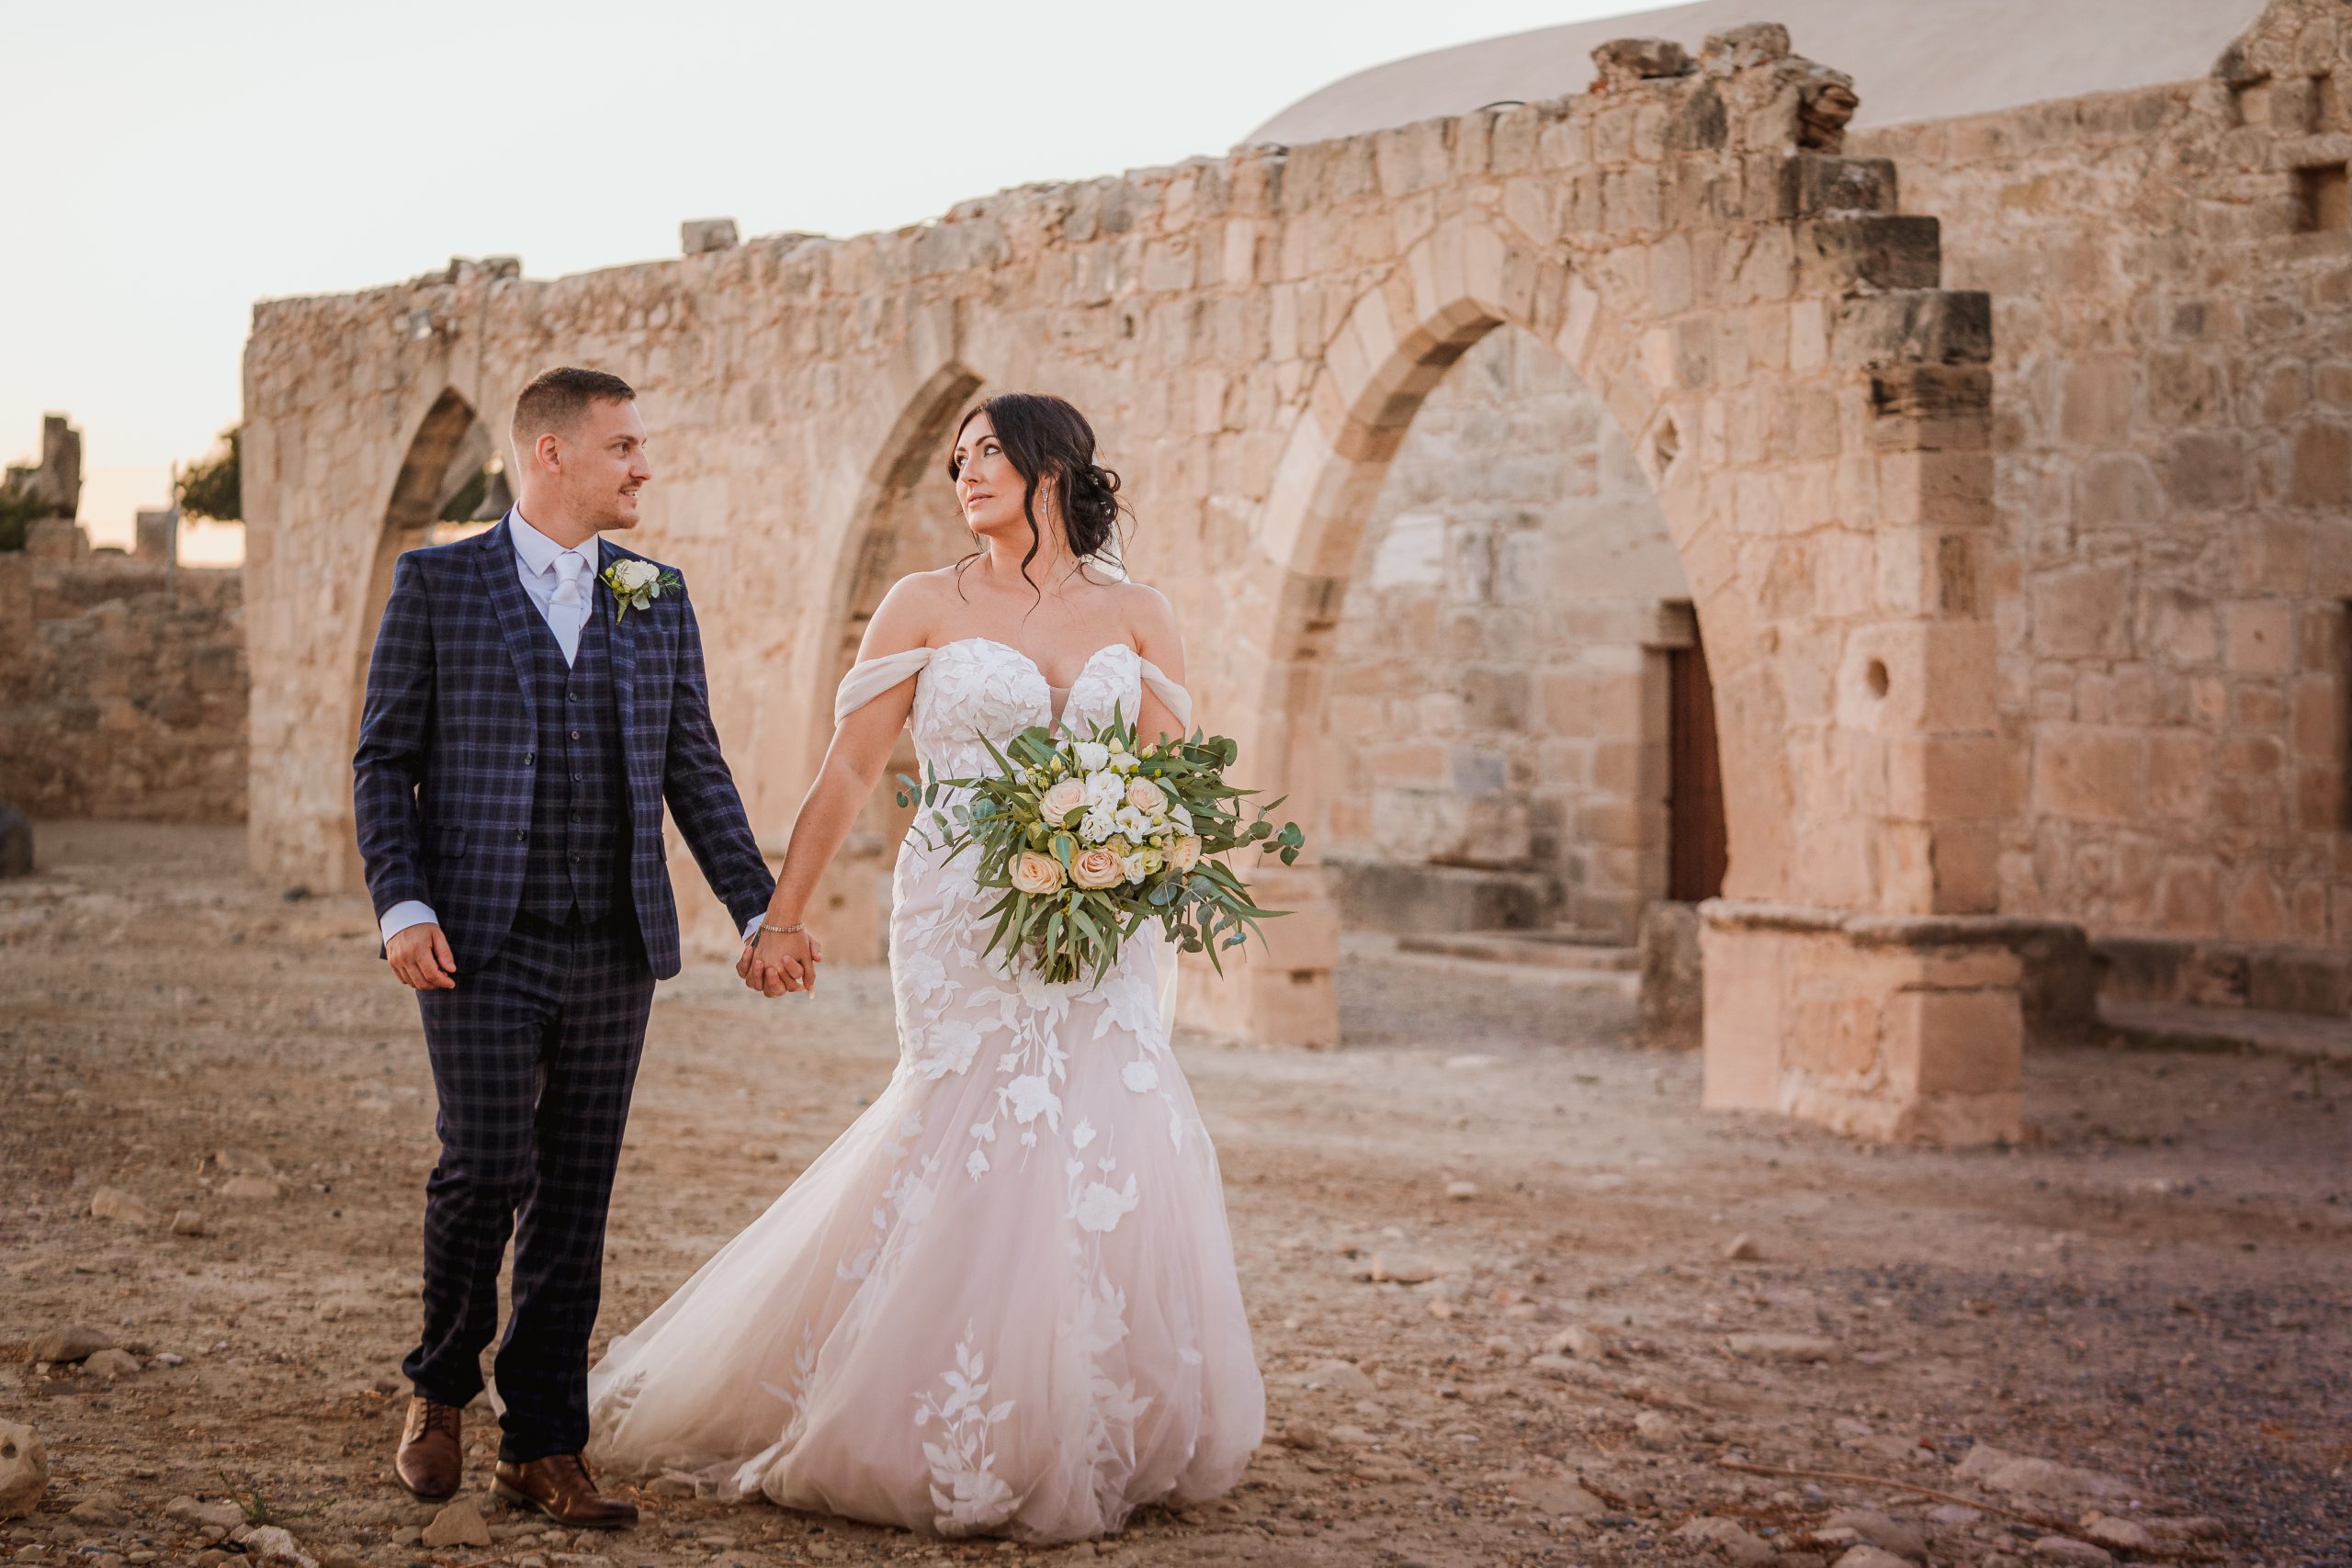 Bride Wearing Hattie marchant devant les ruines avec le marié